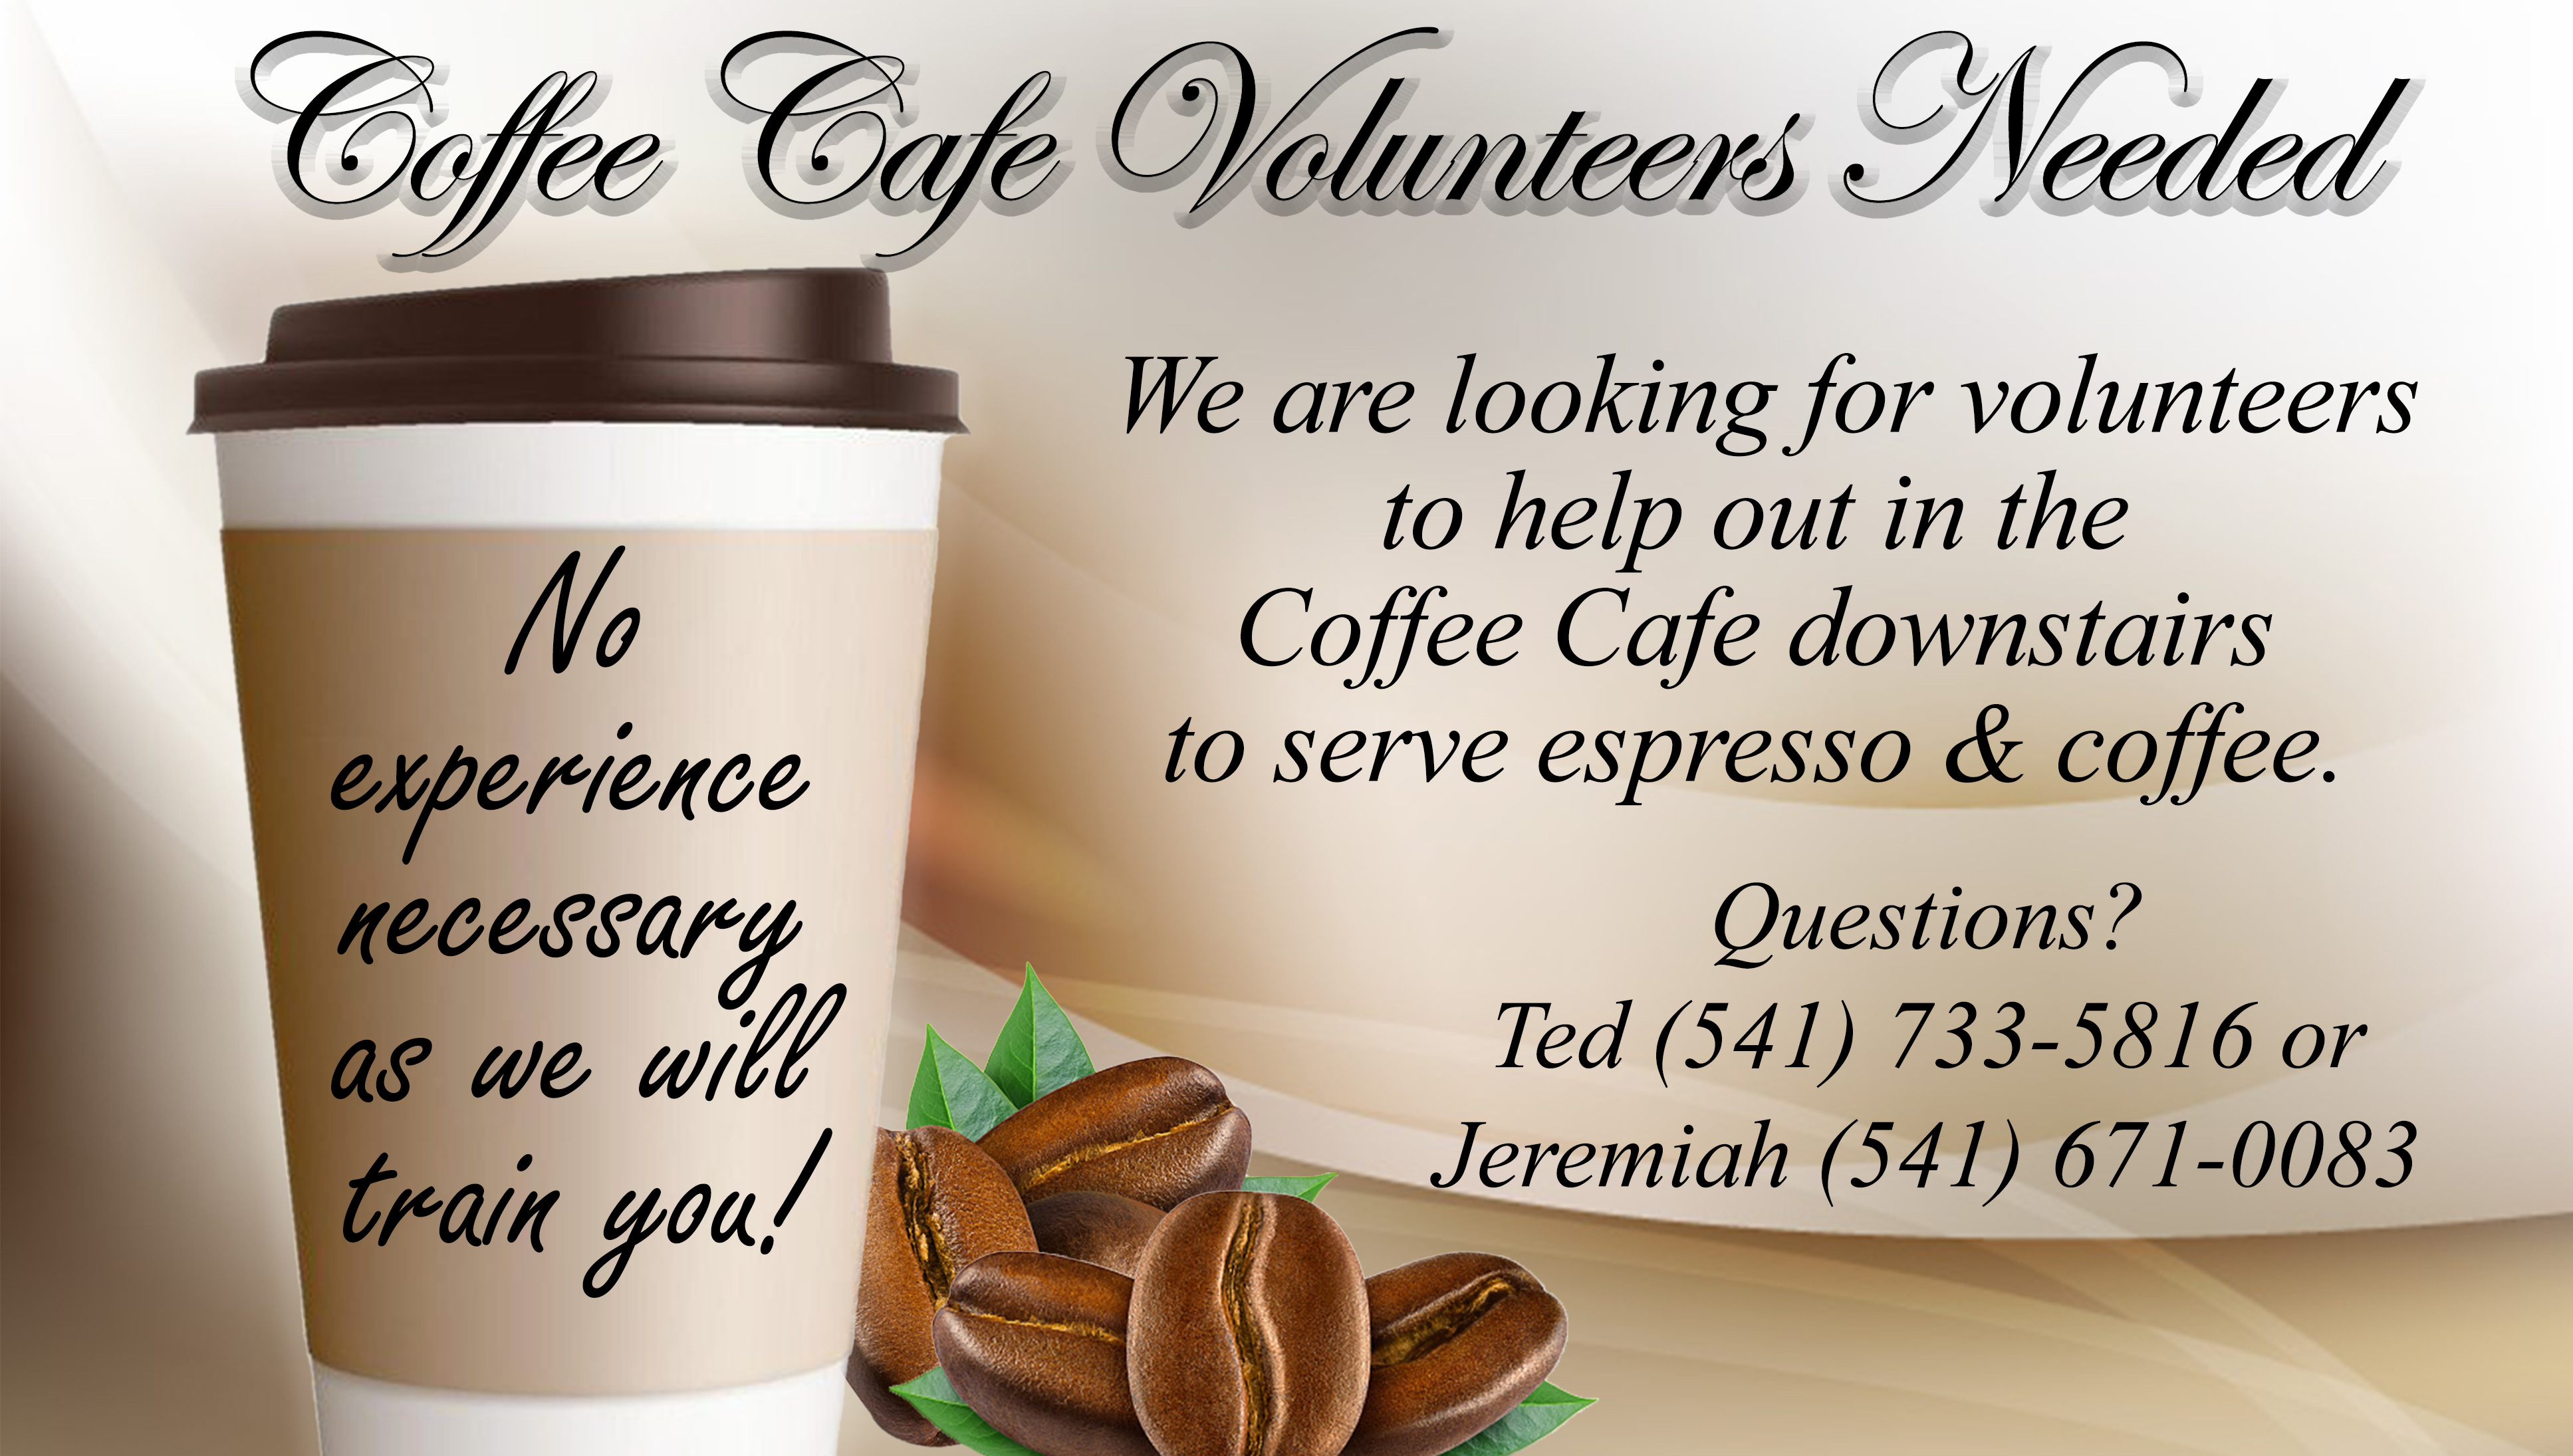 PP_CoffeeShop_VolunteersNeeded_2022 copy.jpg